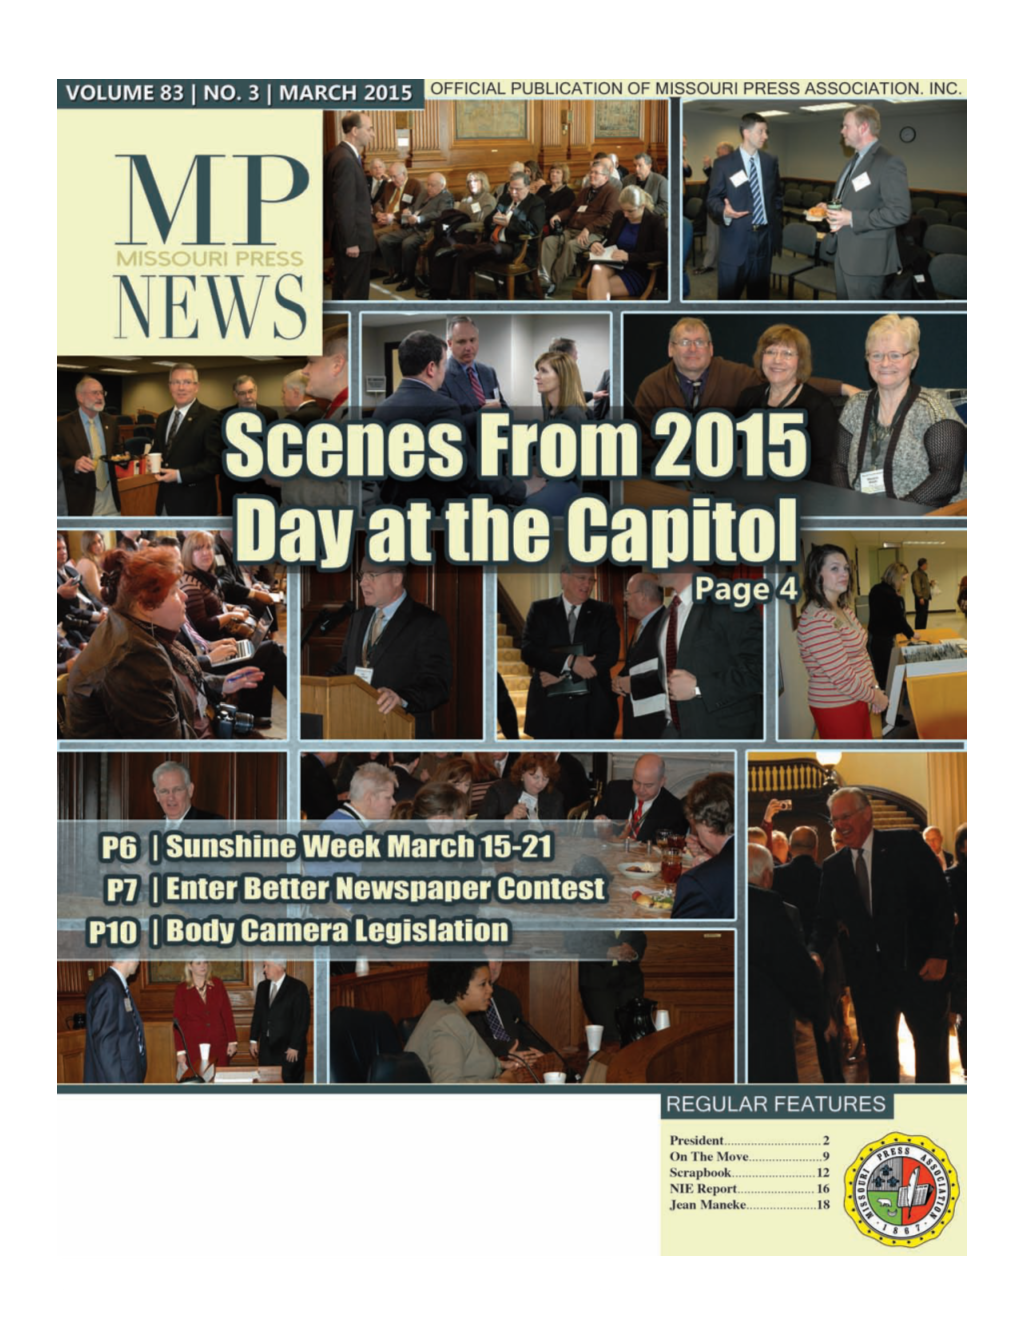 Missouri Press News, April 2014